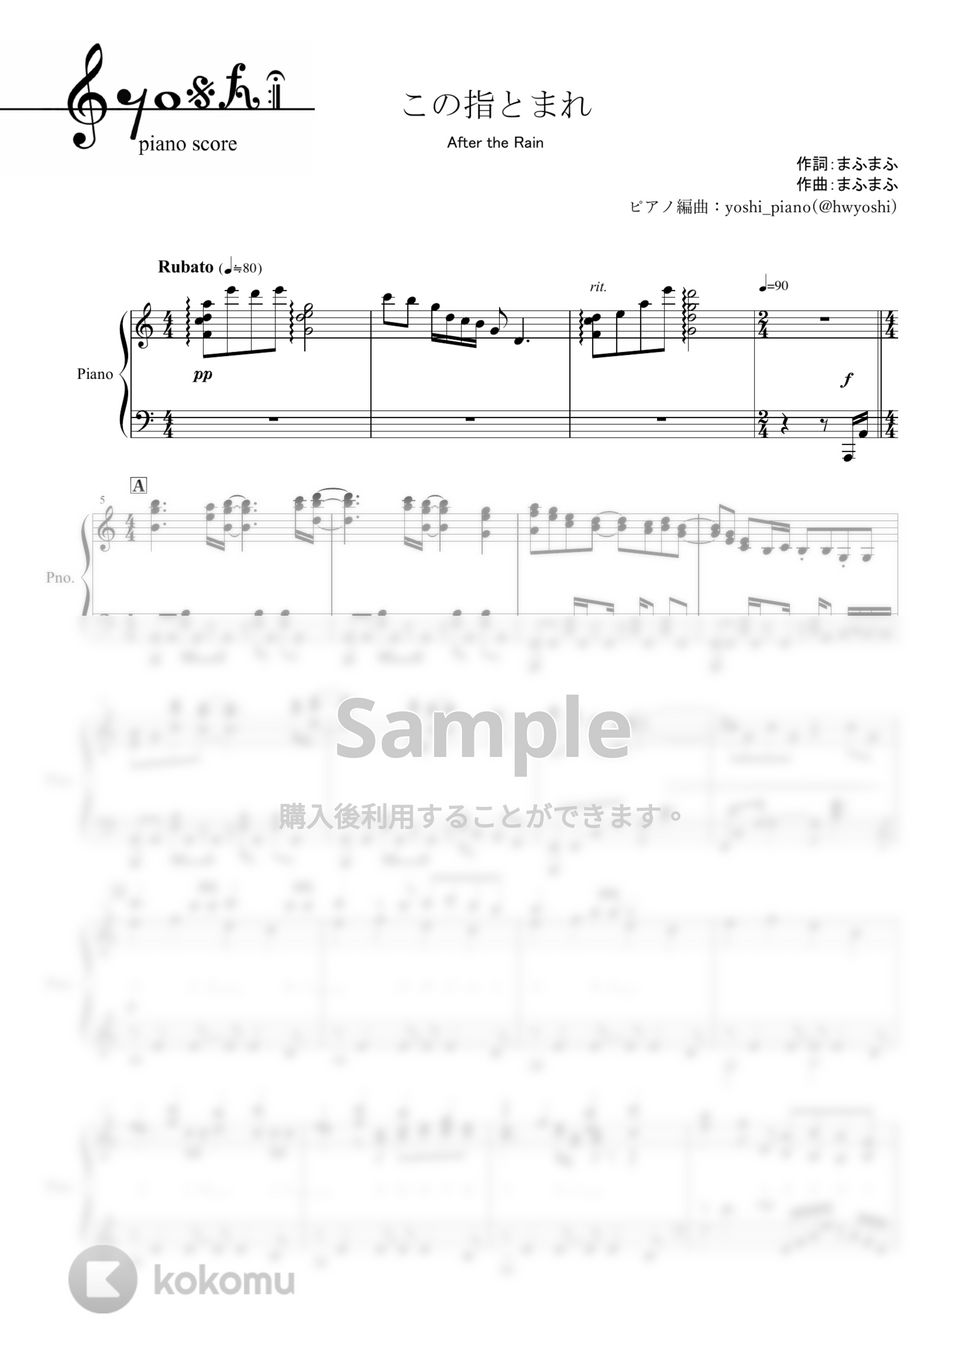 After the Rain - この指とまれ (ピアノ楽譜/全４ページ) by yoshi